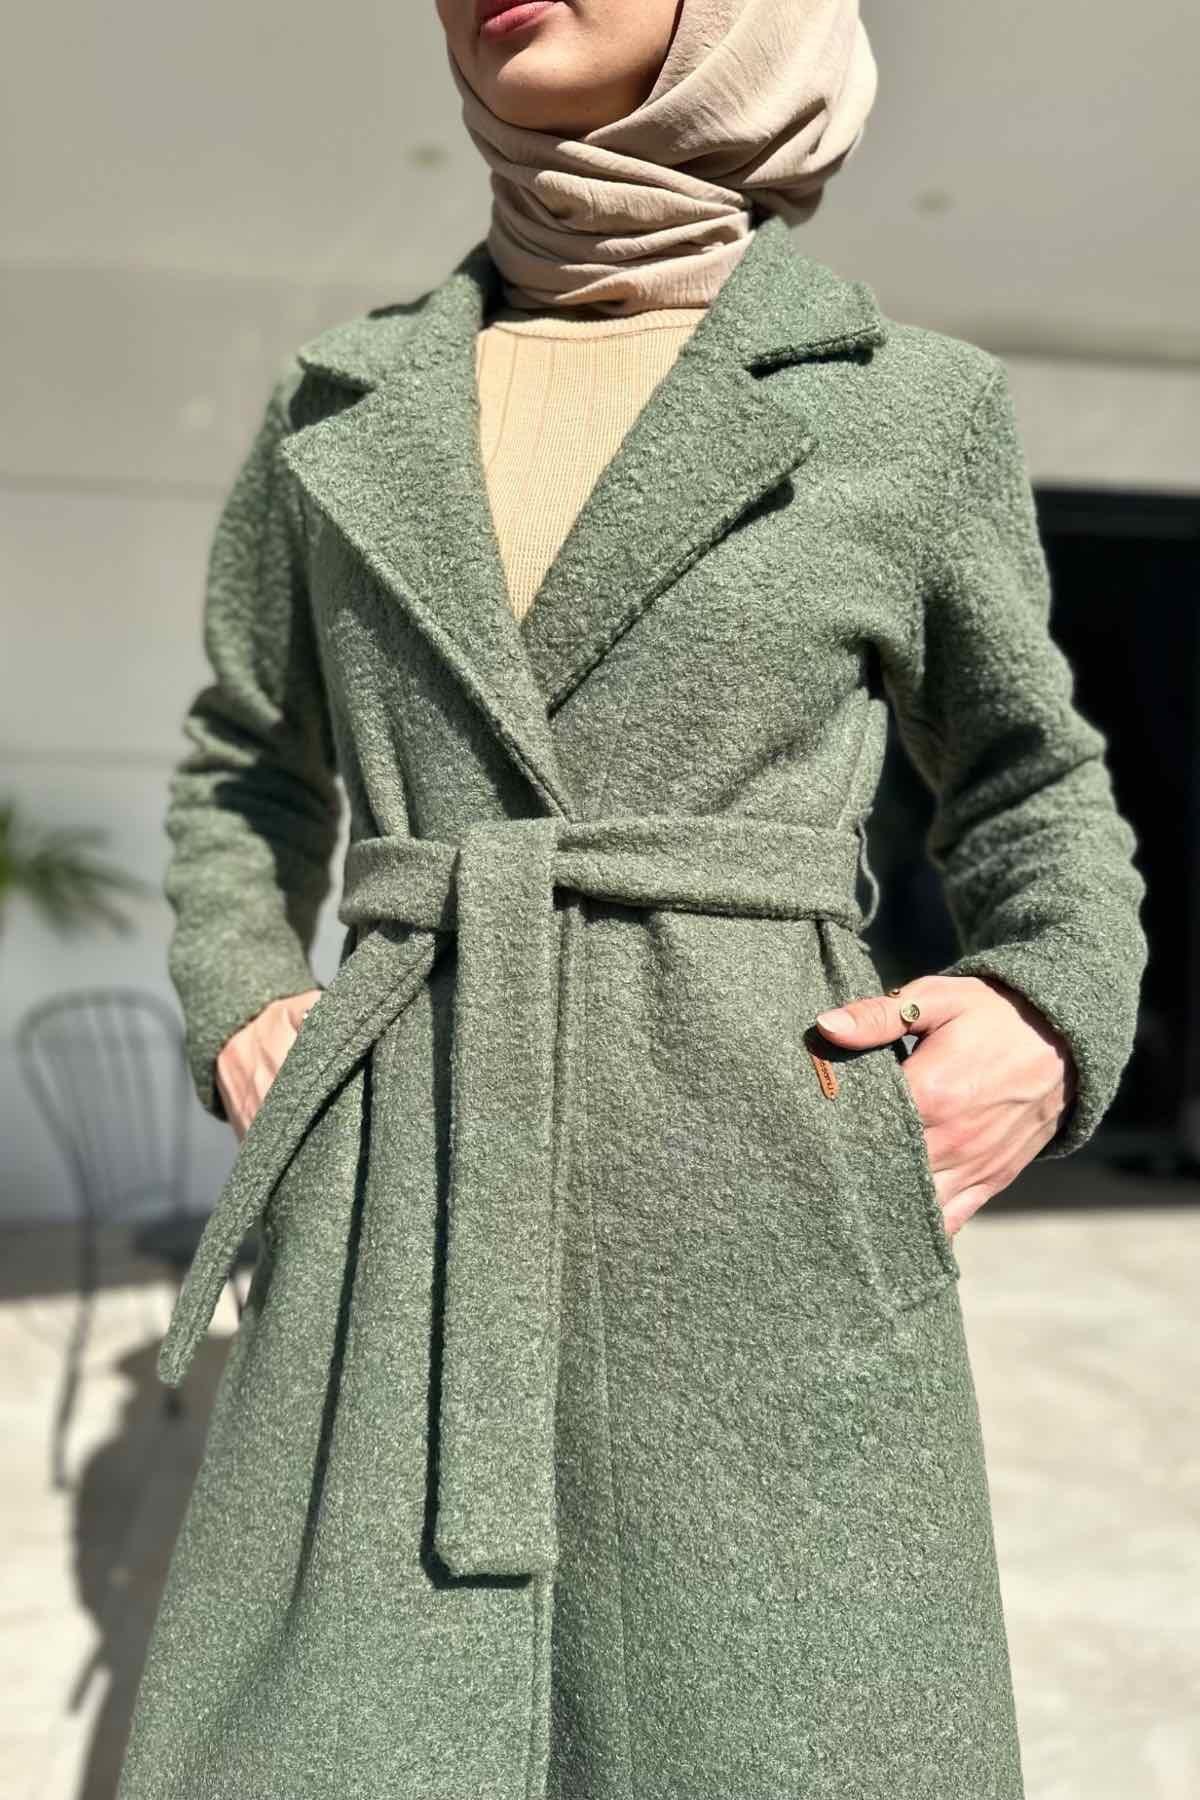 Buklet Küf Yeşili Kaban | Rabia Şamlı | Tesettür Giyim, Elbise ve Kadın  Giyim Modası